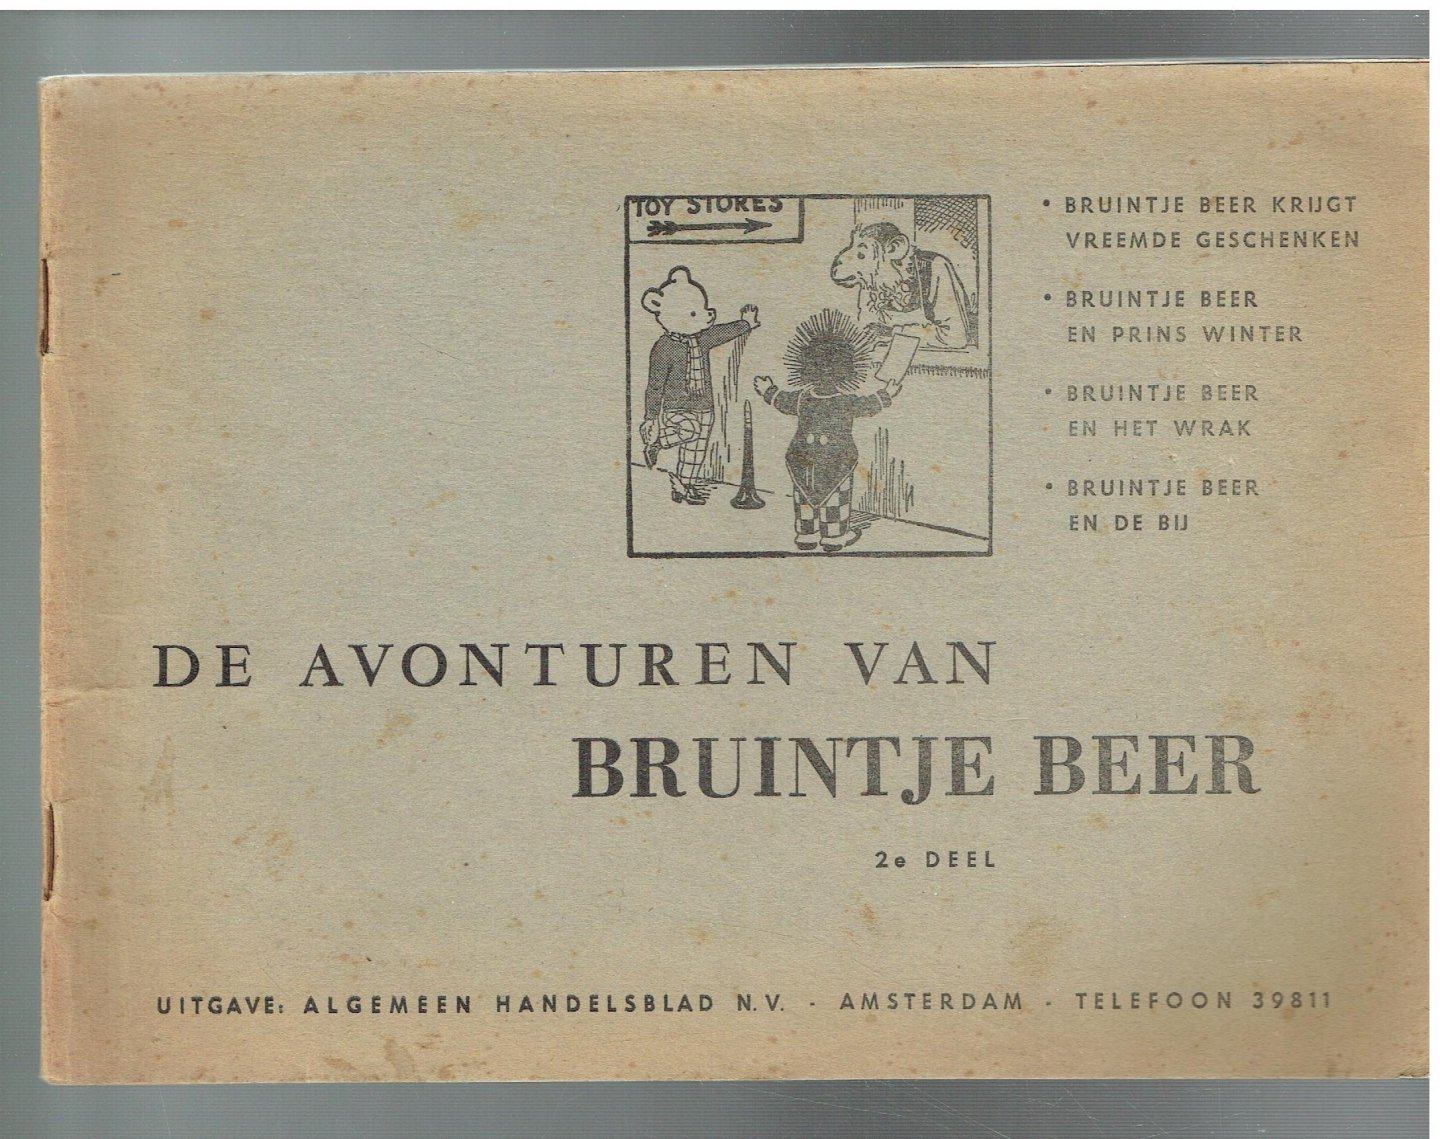  - De avanturen van Bruintje Beer, 2e deel